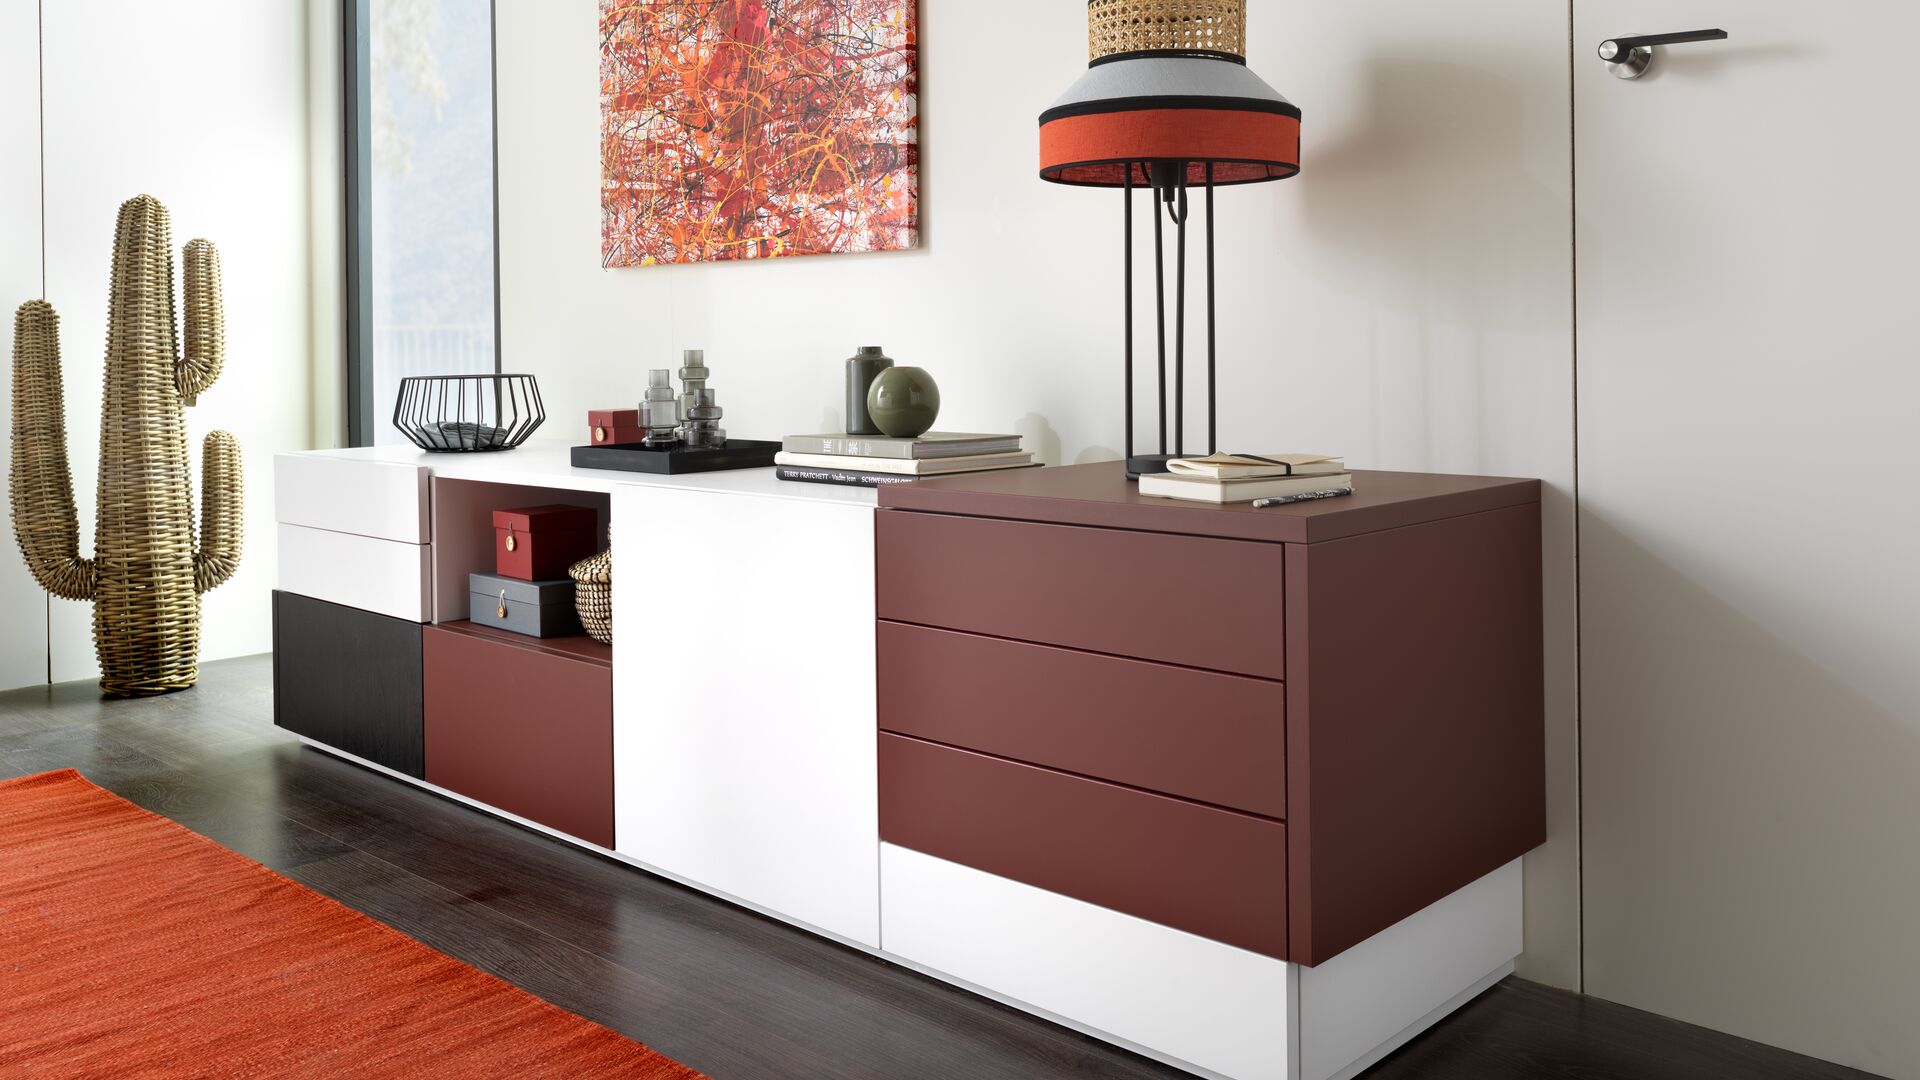 Designer-Möbel in rot, weiß und schwarz